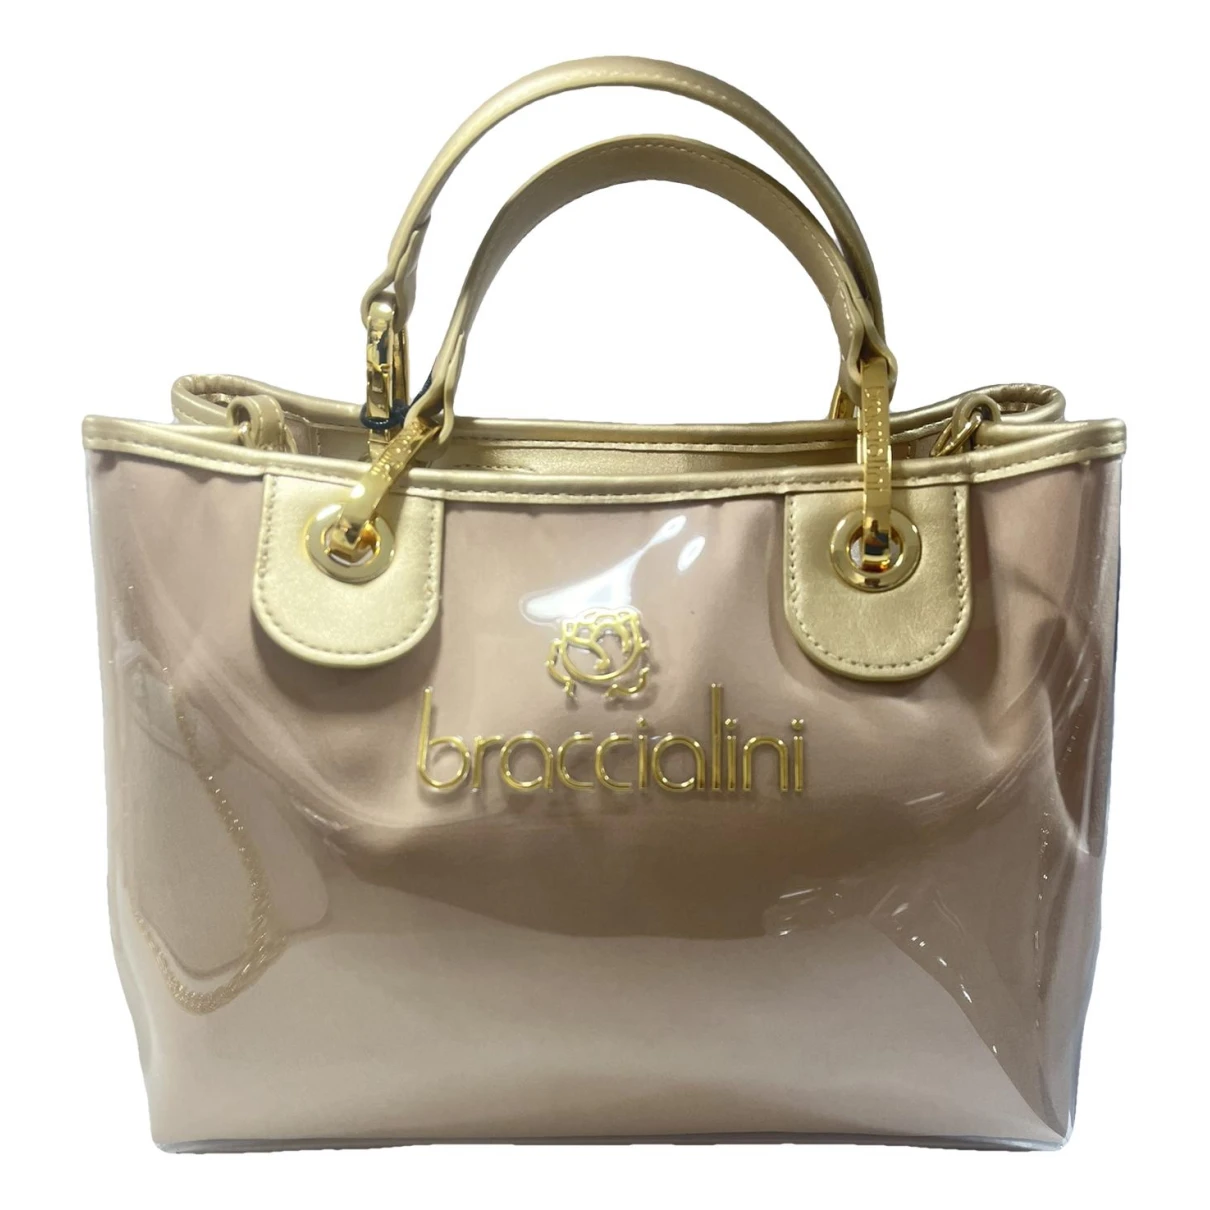 Pre-owned Braccialini Handbag In Gold